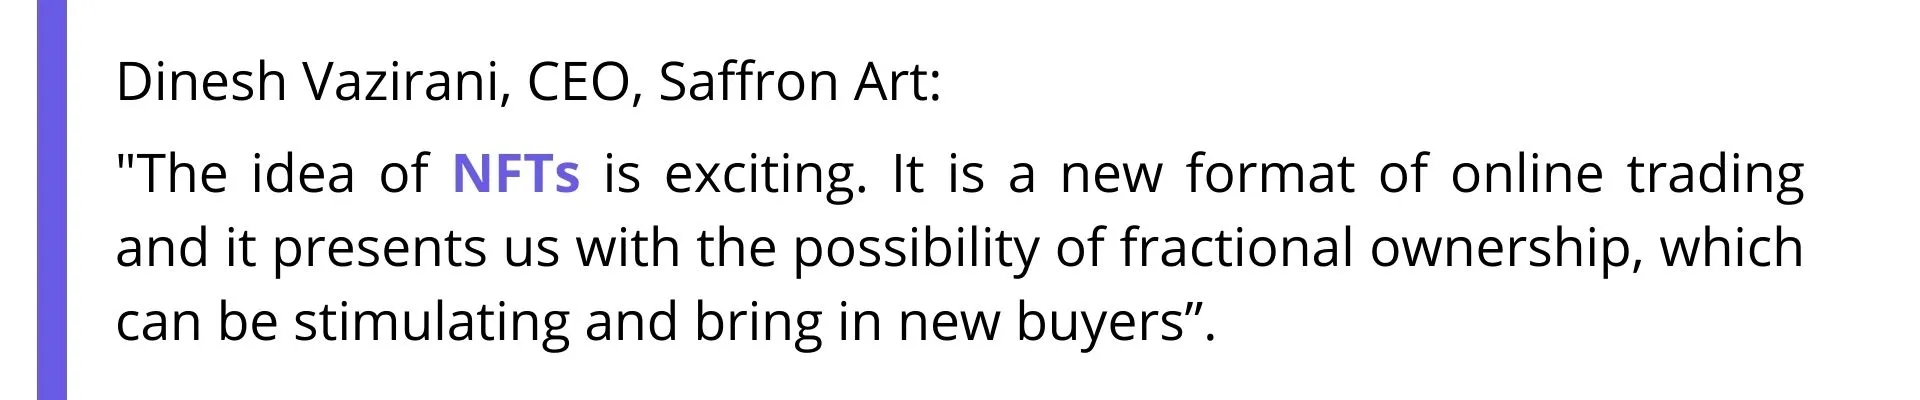 Dinesh Vazirani, CEO, Saffron Art | Article about NFT